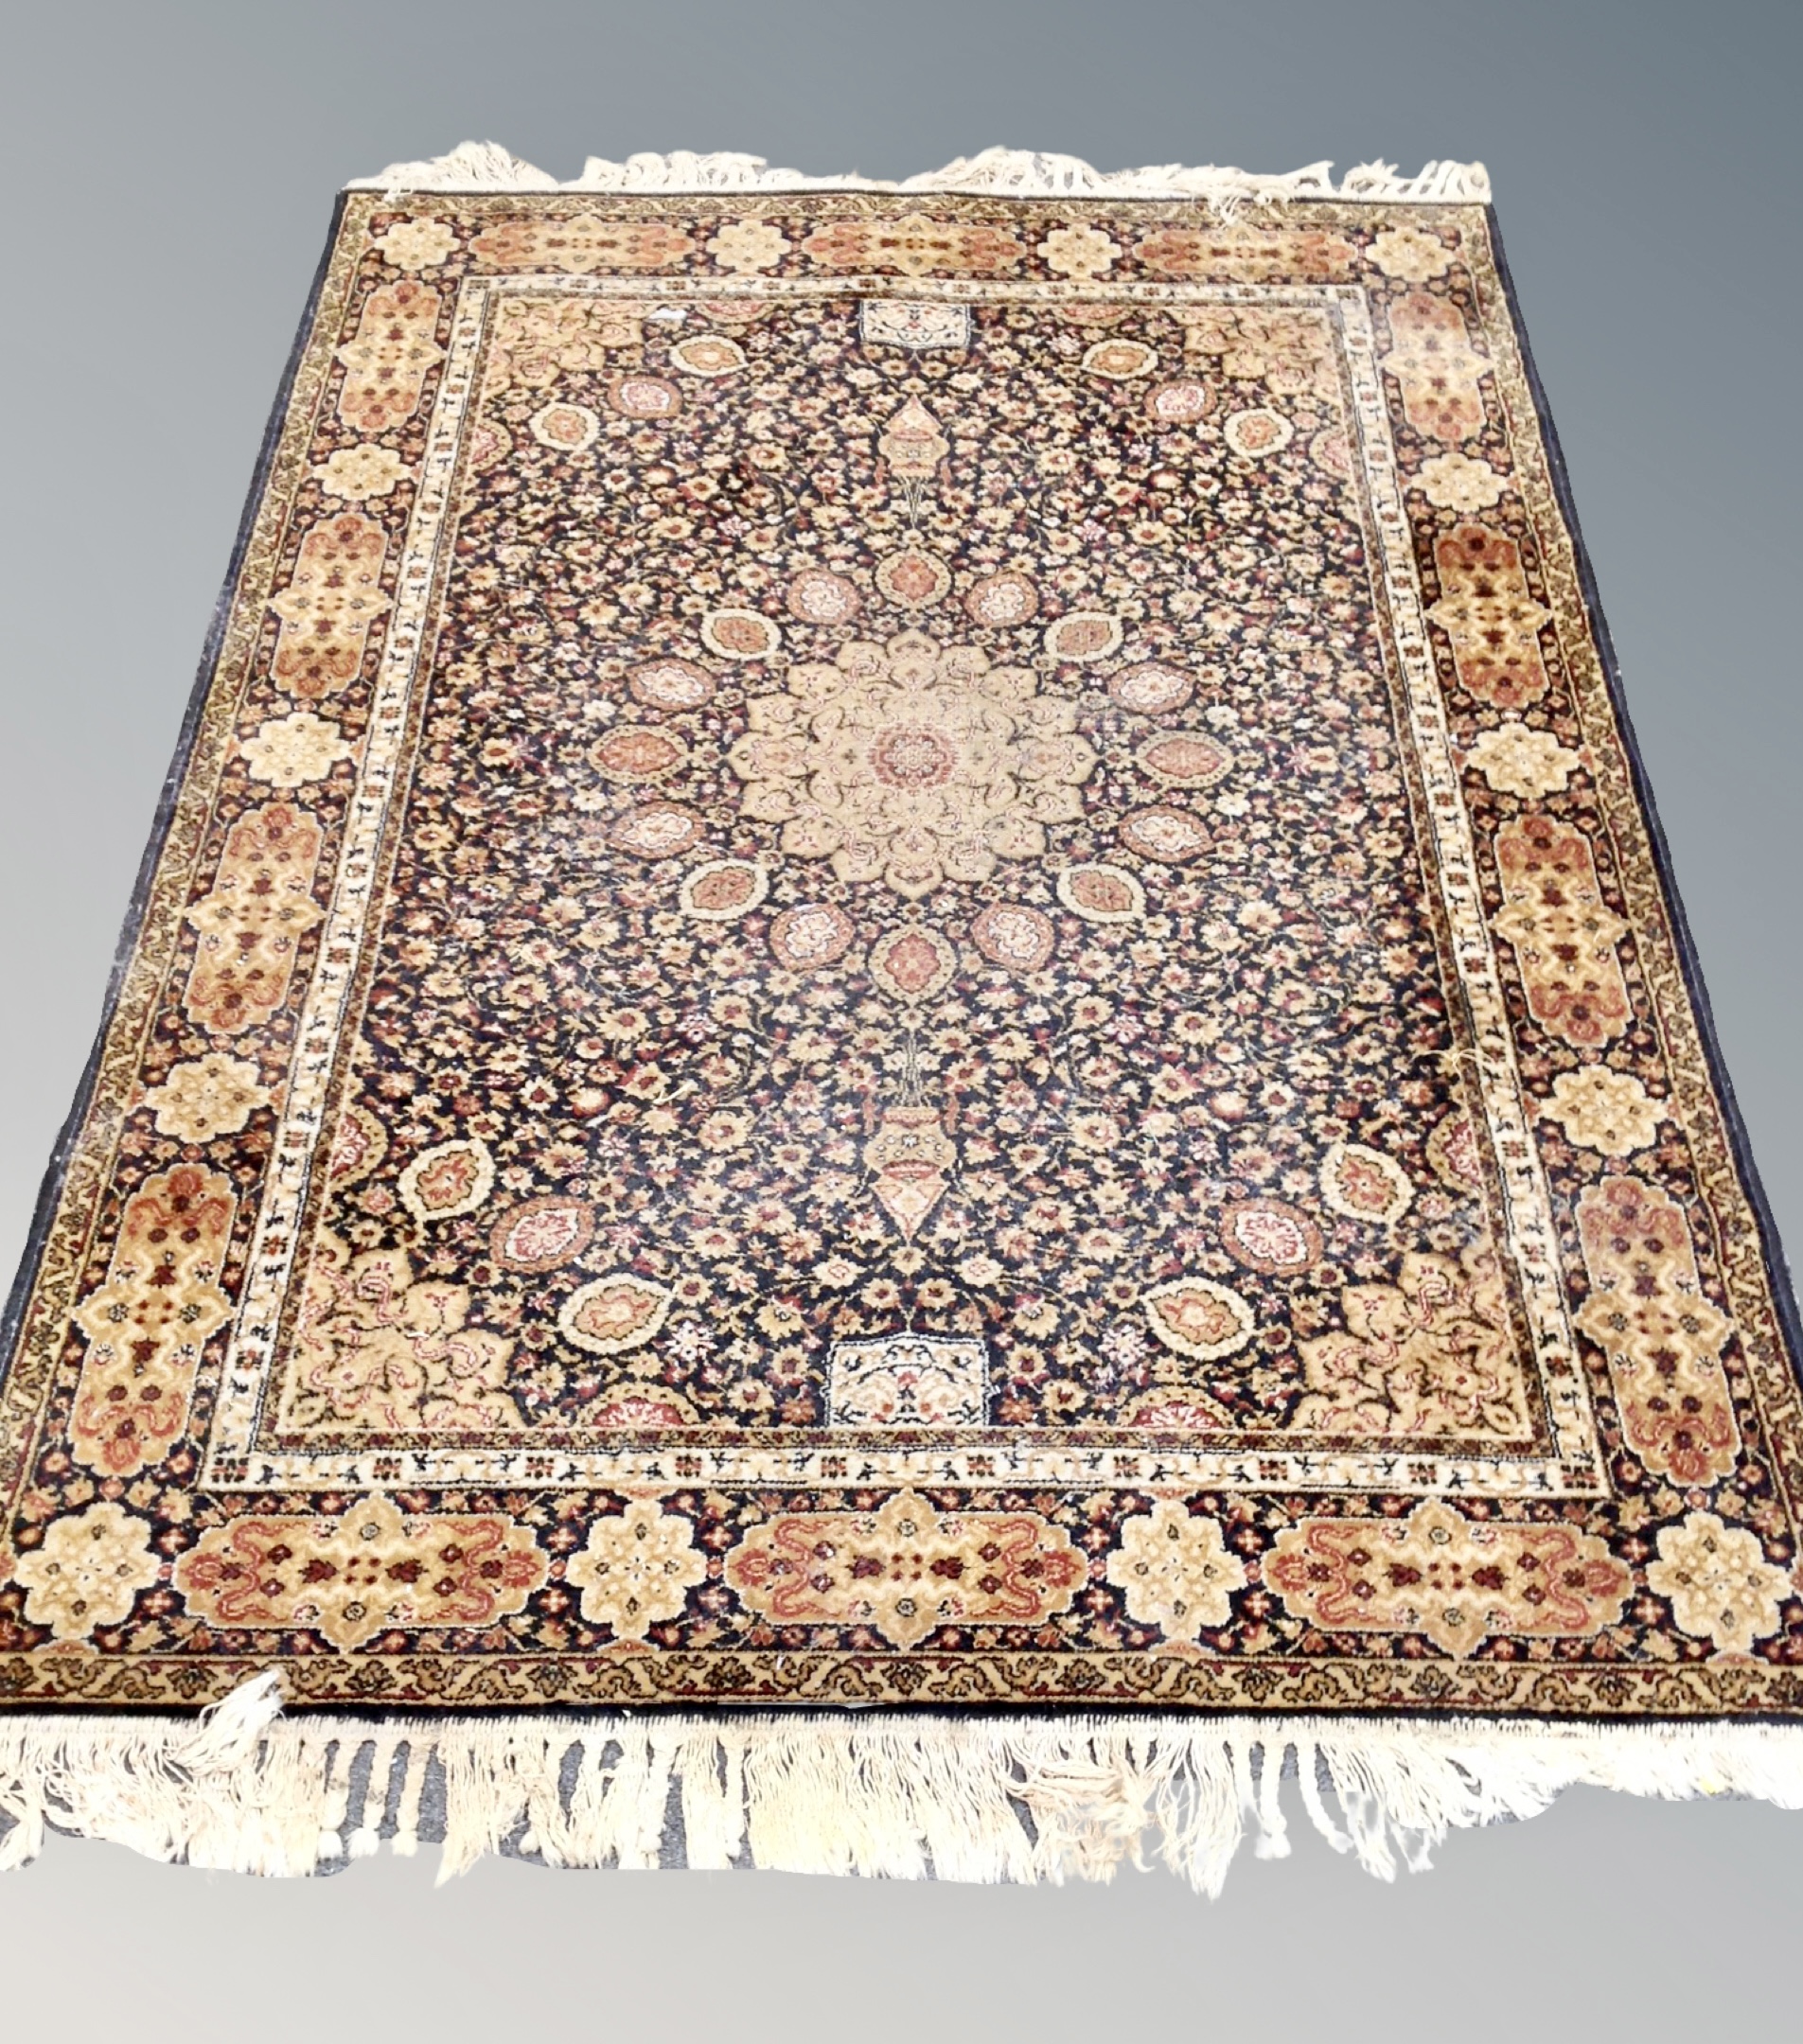 A machine made Tabriz design rug 196 cm x 143 cm